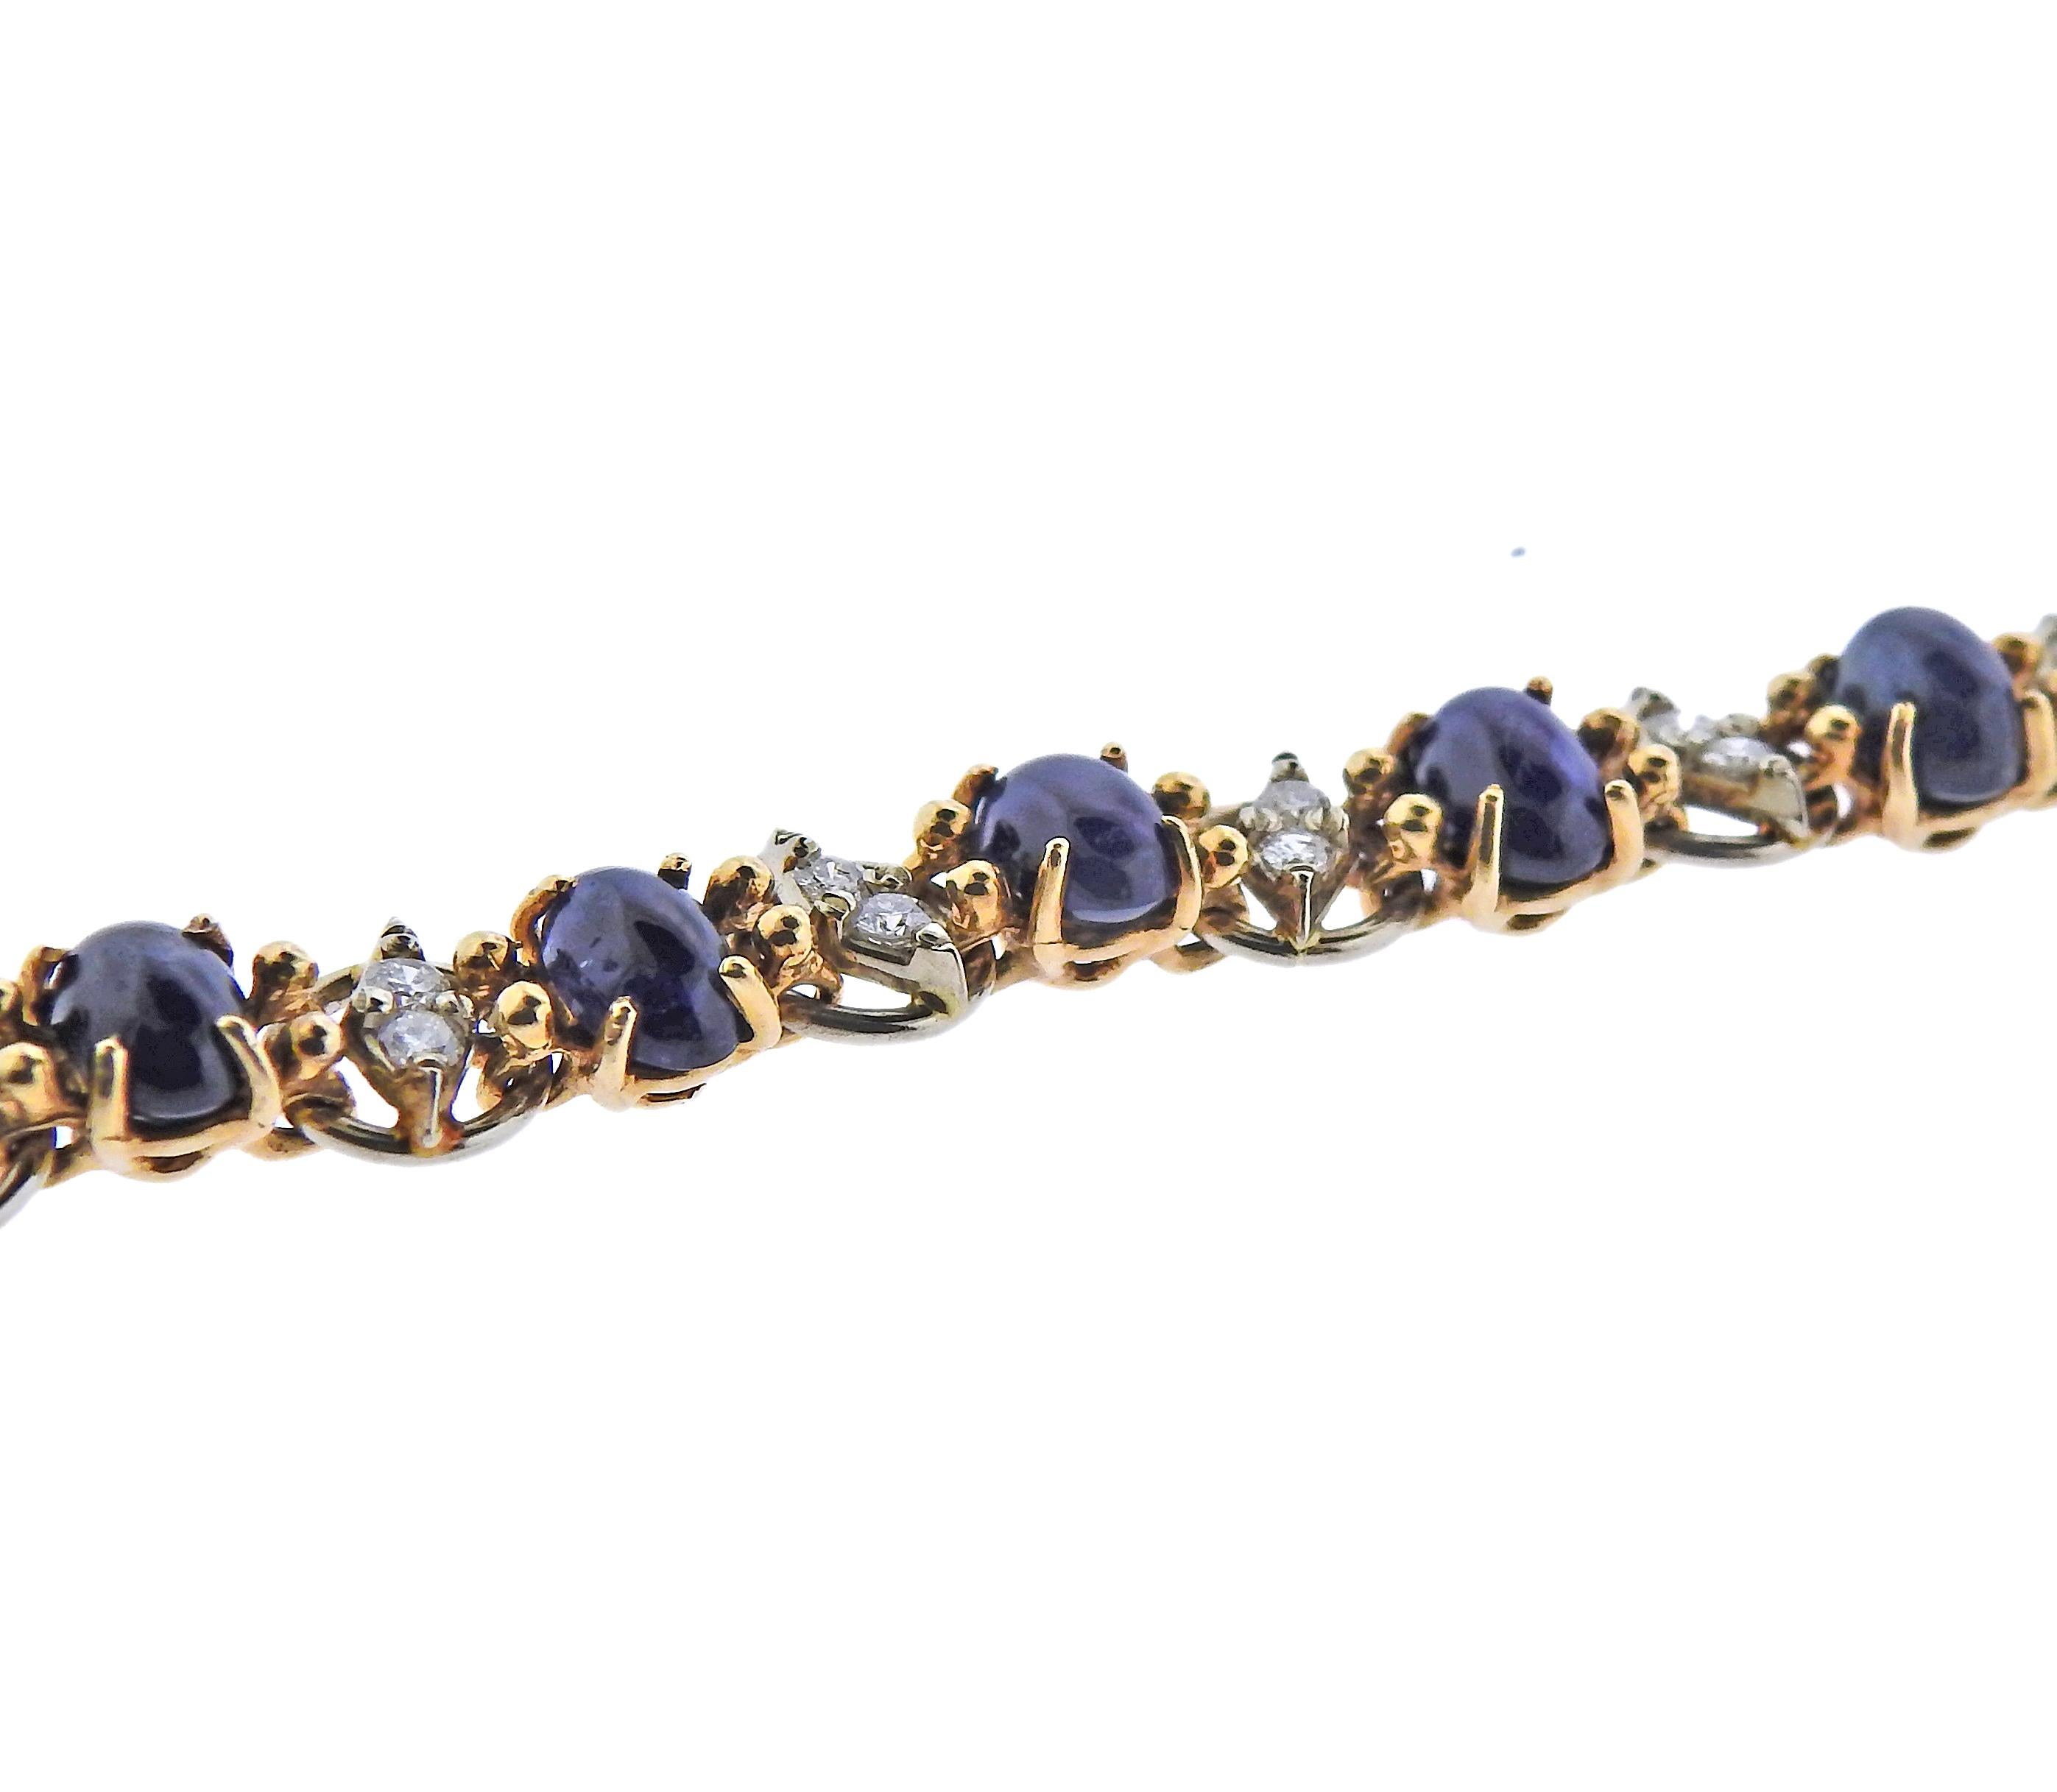 Armband aus 14 Karat Gold, besetzt mit blauen Saphir-Cabochons und ca. 0,60 ct Diamanten. Das Armband ist 7